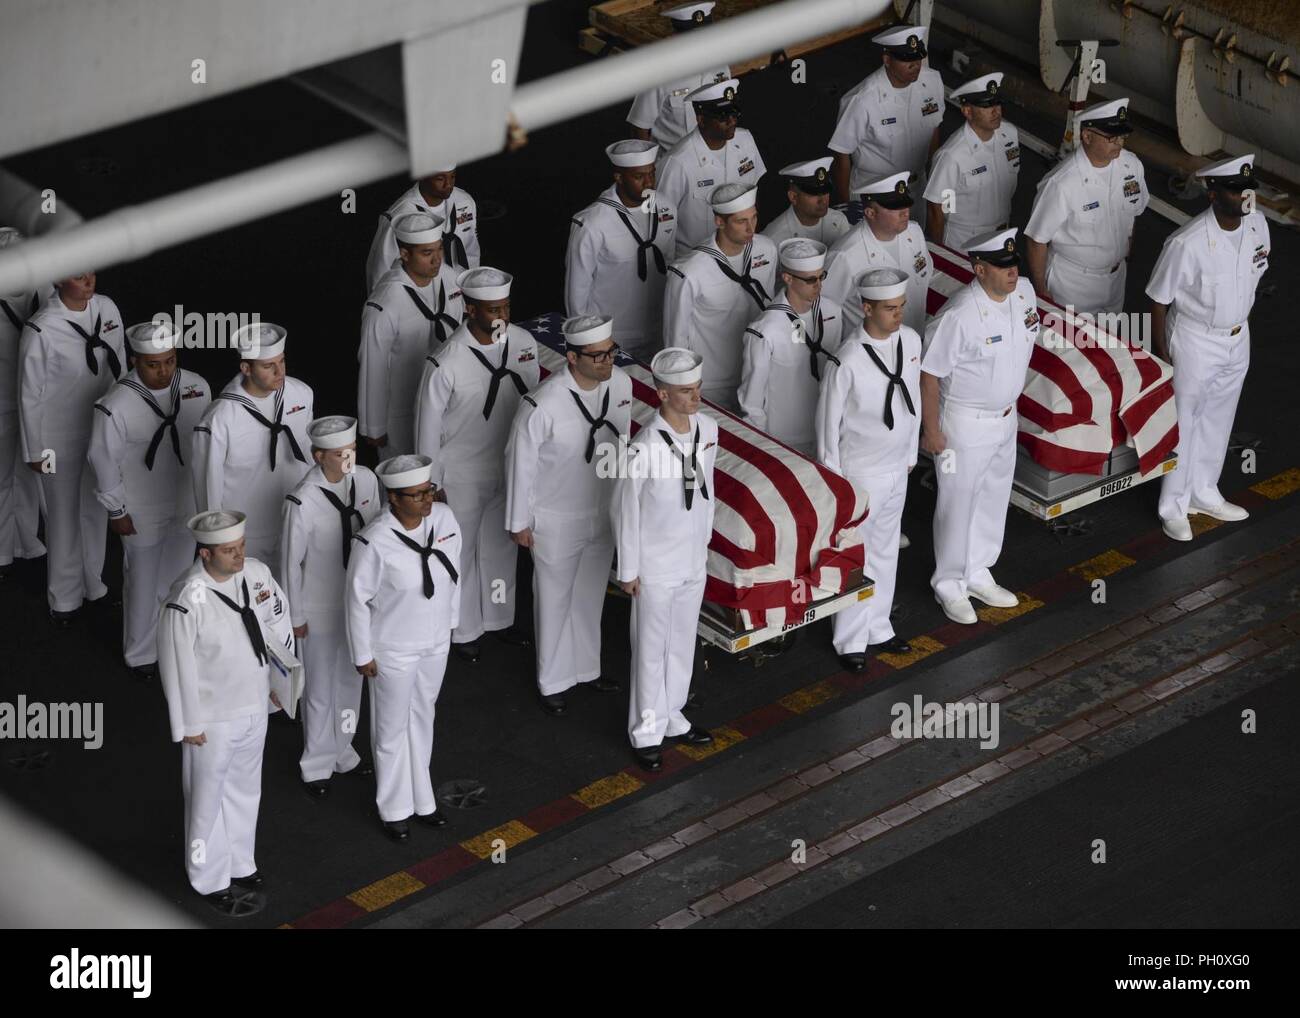 Ozean (21. Juni 2018) Segler nehmen in einer Bestattung auf See Zeremonie an Bord der Nimitz-Klasse Flugzeugträger USS Carl Vinson (CVN 70). Carl Vinson ist derzeit in der Vorbereitung für die Teilnahme an den Rand des Pazifik (Rimpac) 2018 Übung im Gange. Stockfoto